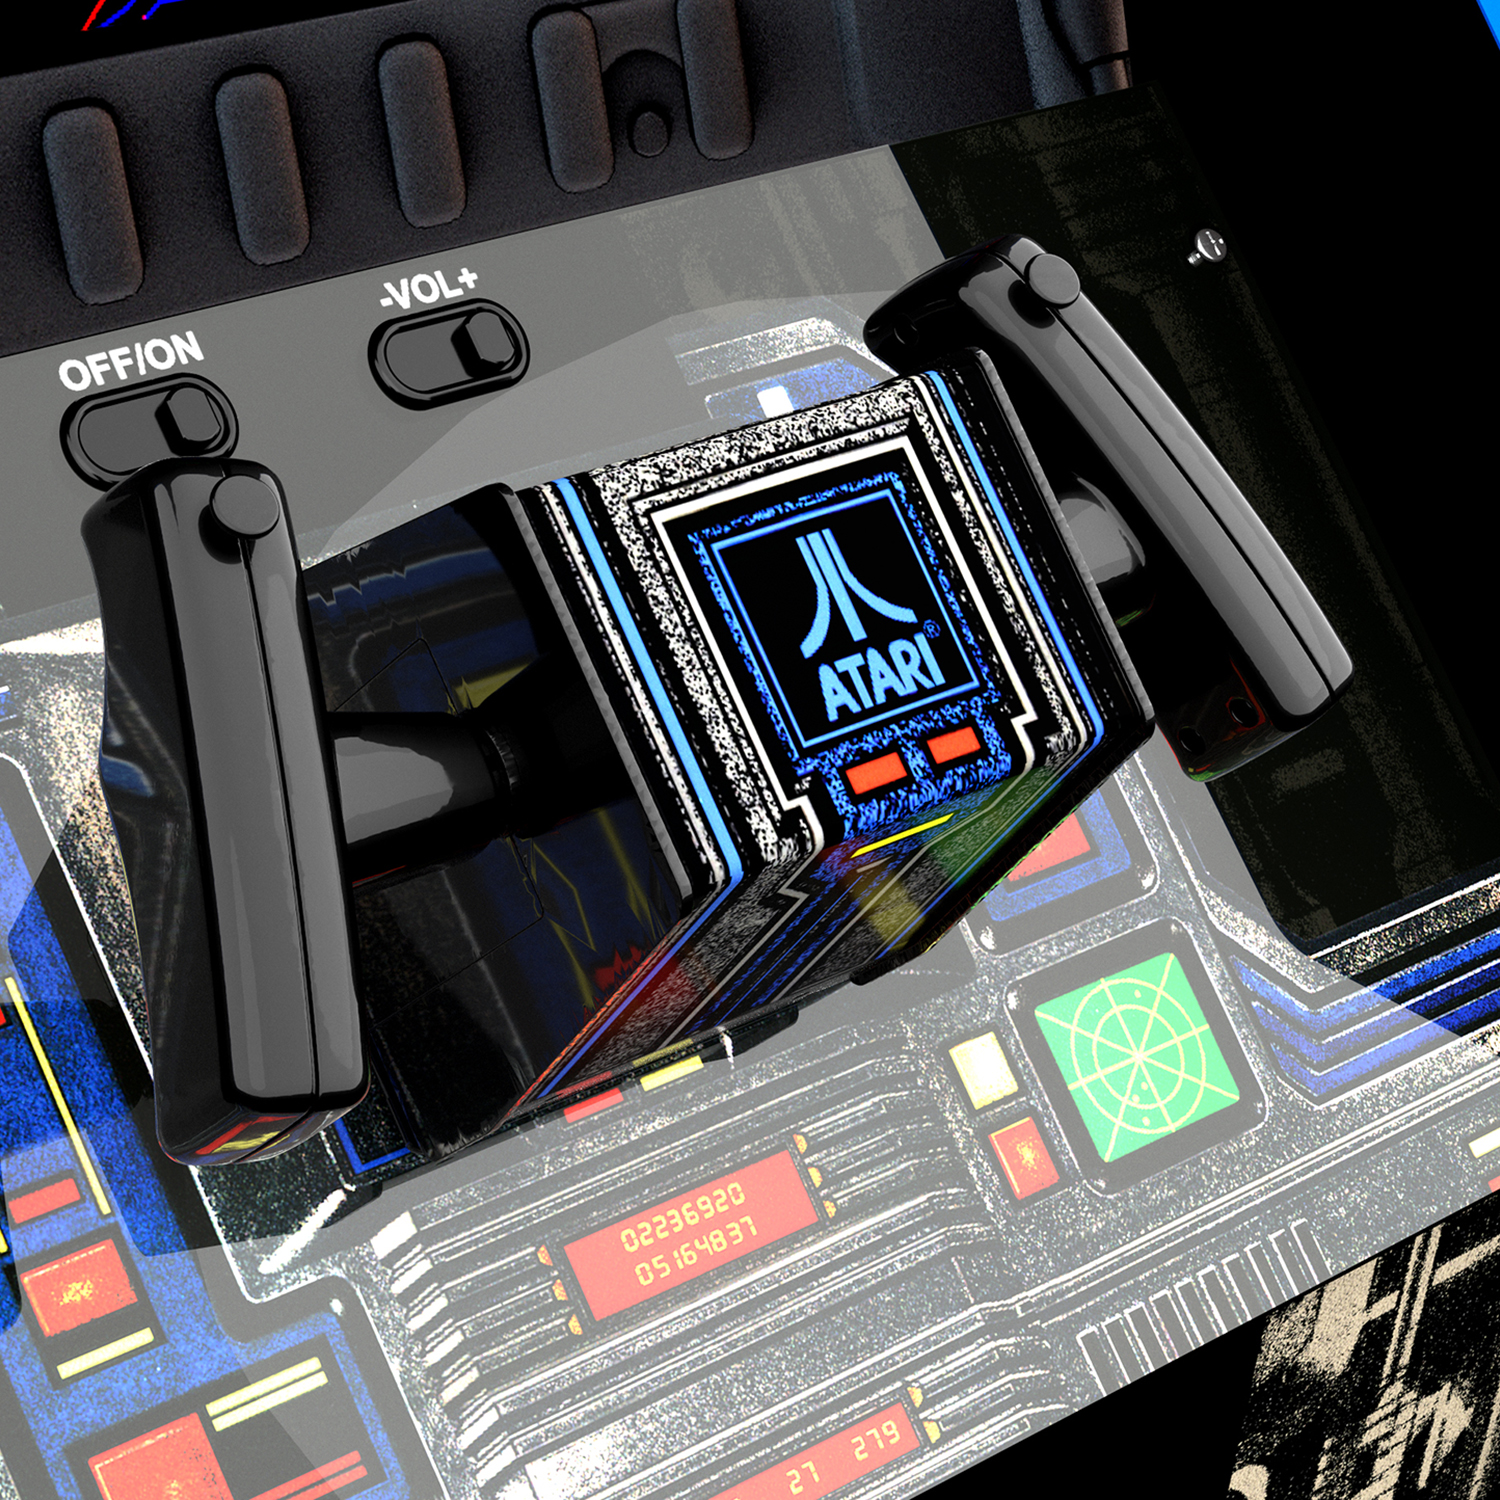 Star Wars Arcade Machine w/ Riser, Arcade1UP - image 4 of 4